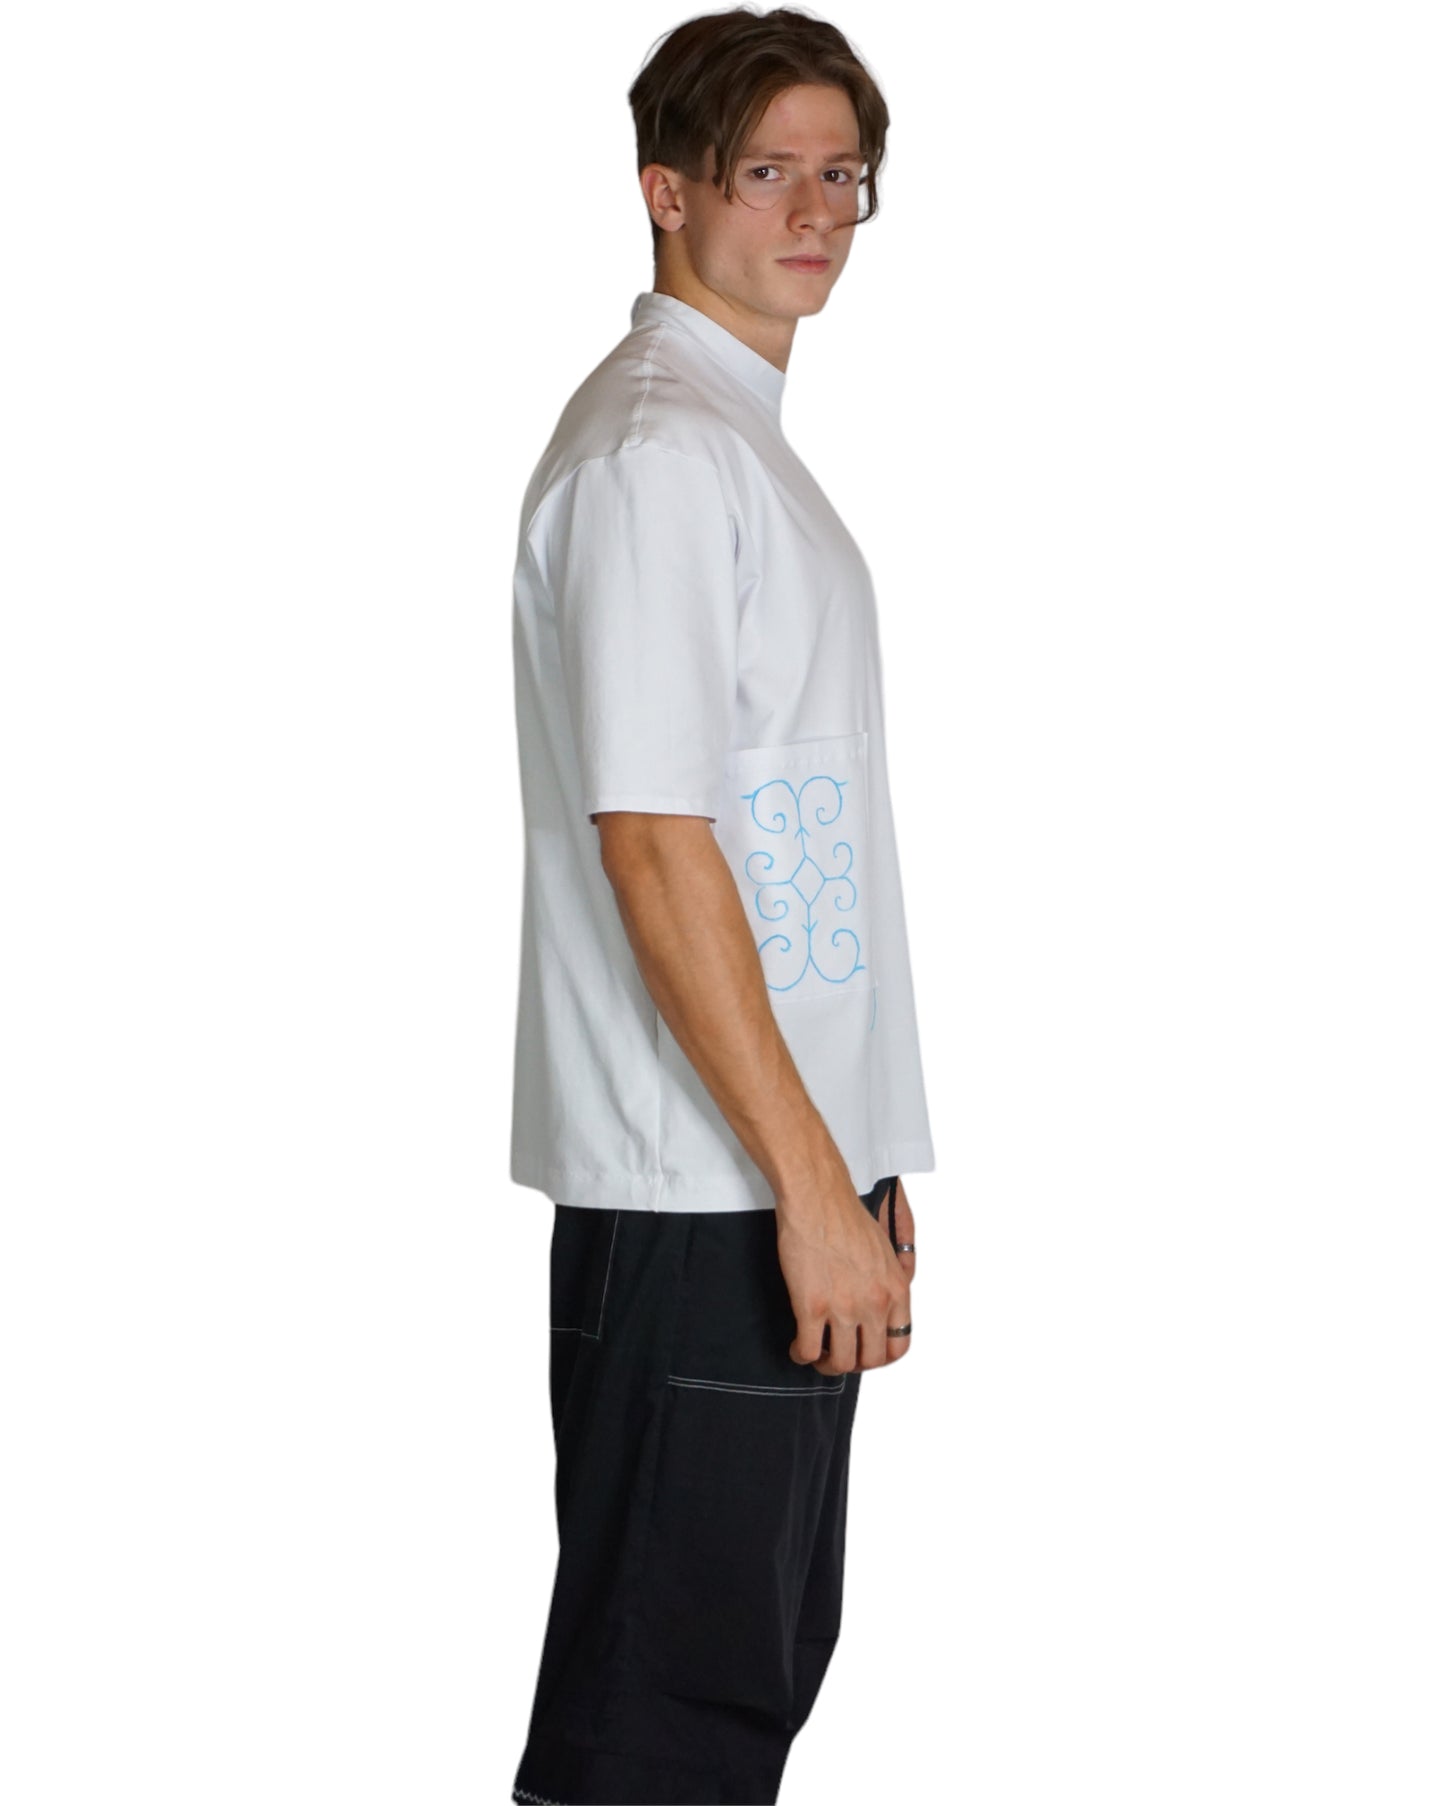 T-Shirt in weiß mit Stehkragen (Unisex)